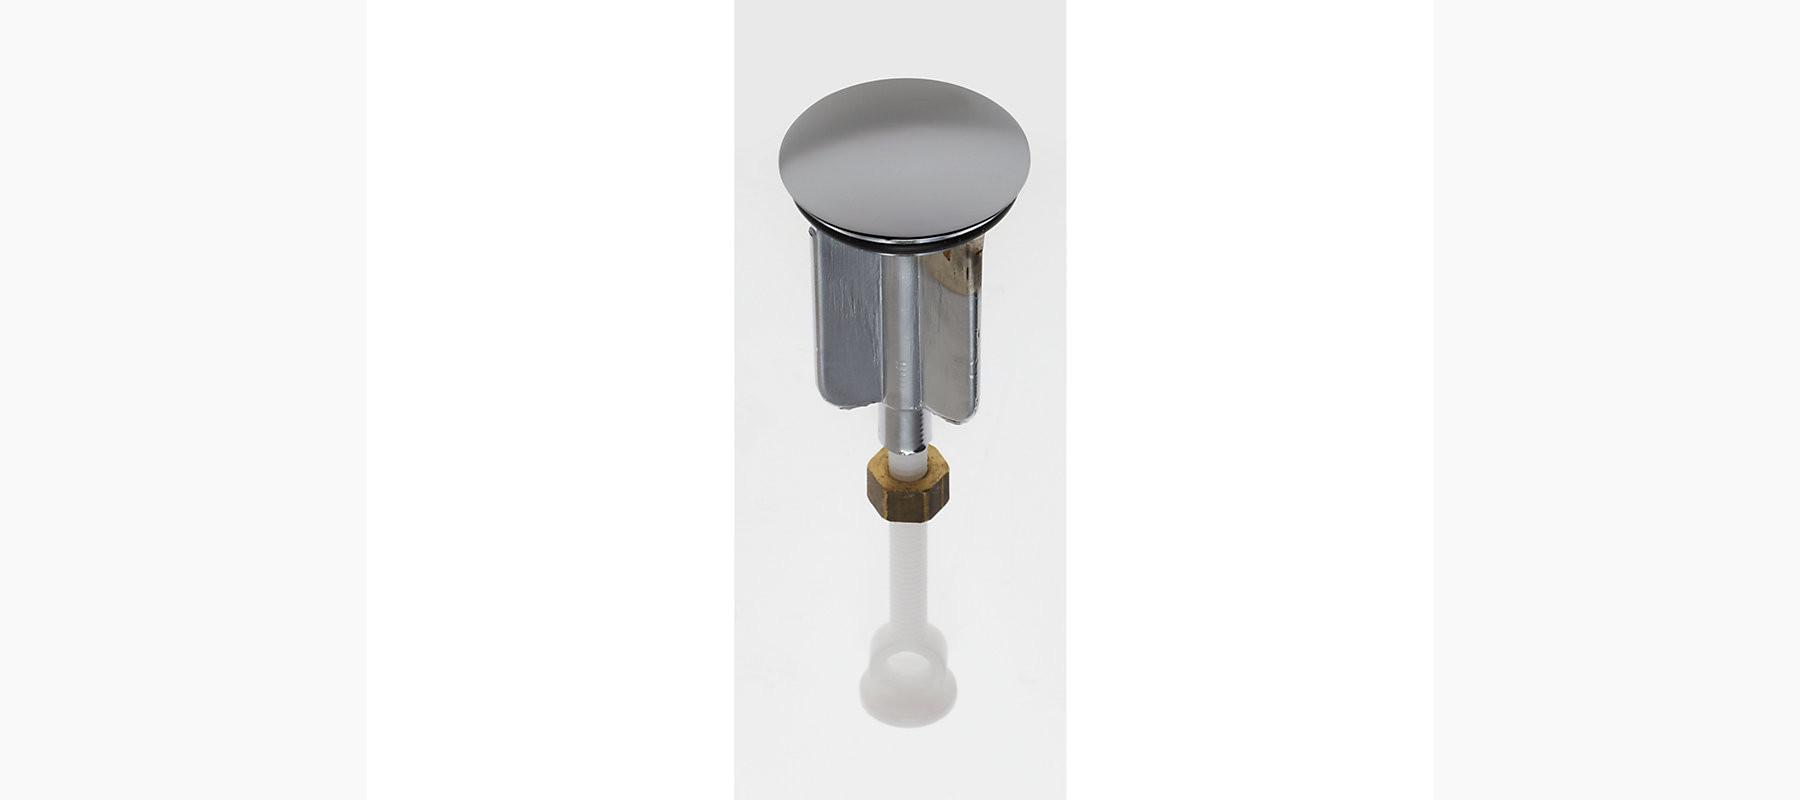 Kohler Bathroom Sink Stopper
 Standard Plumbing Supply Product Kohler K CP